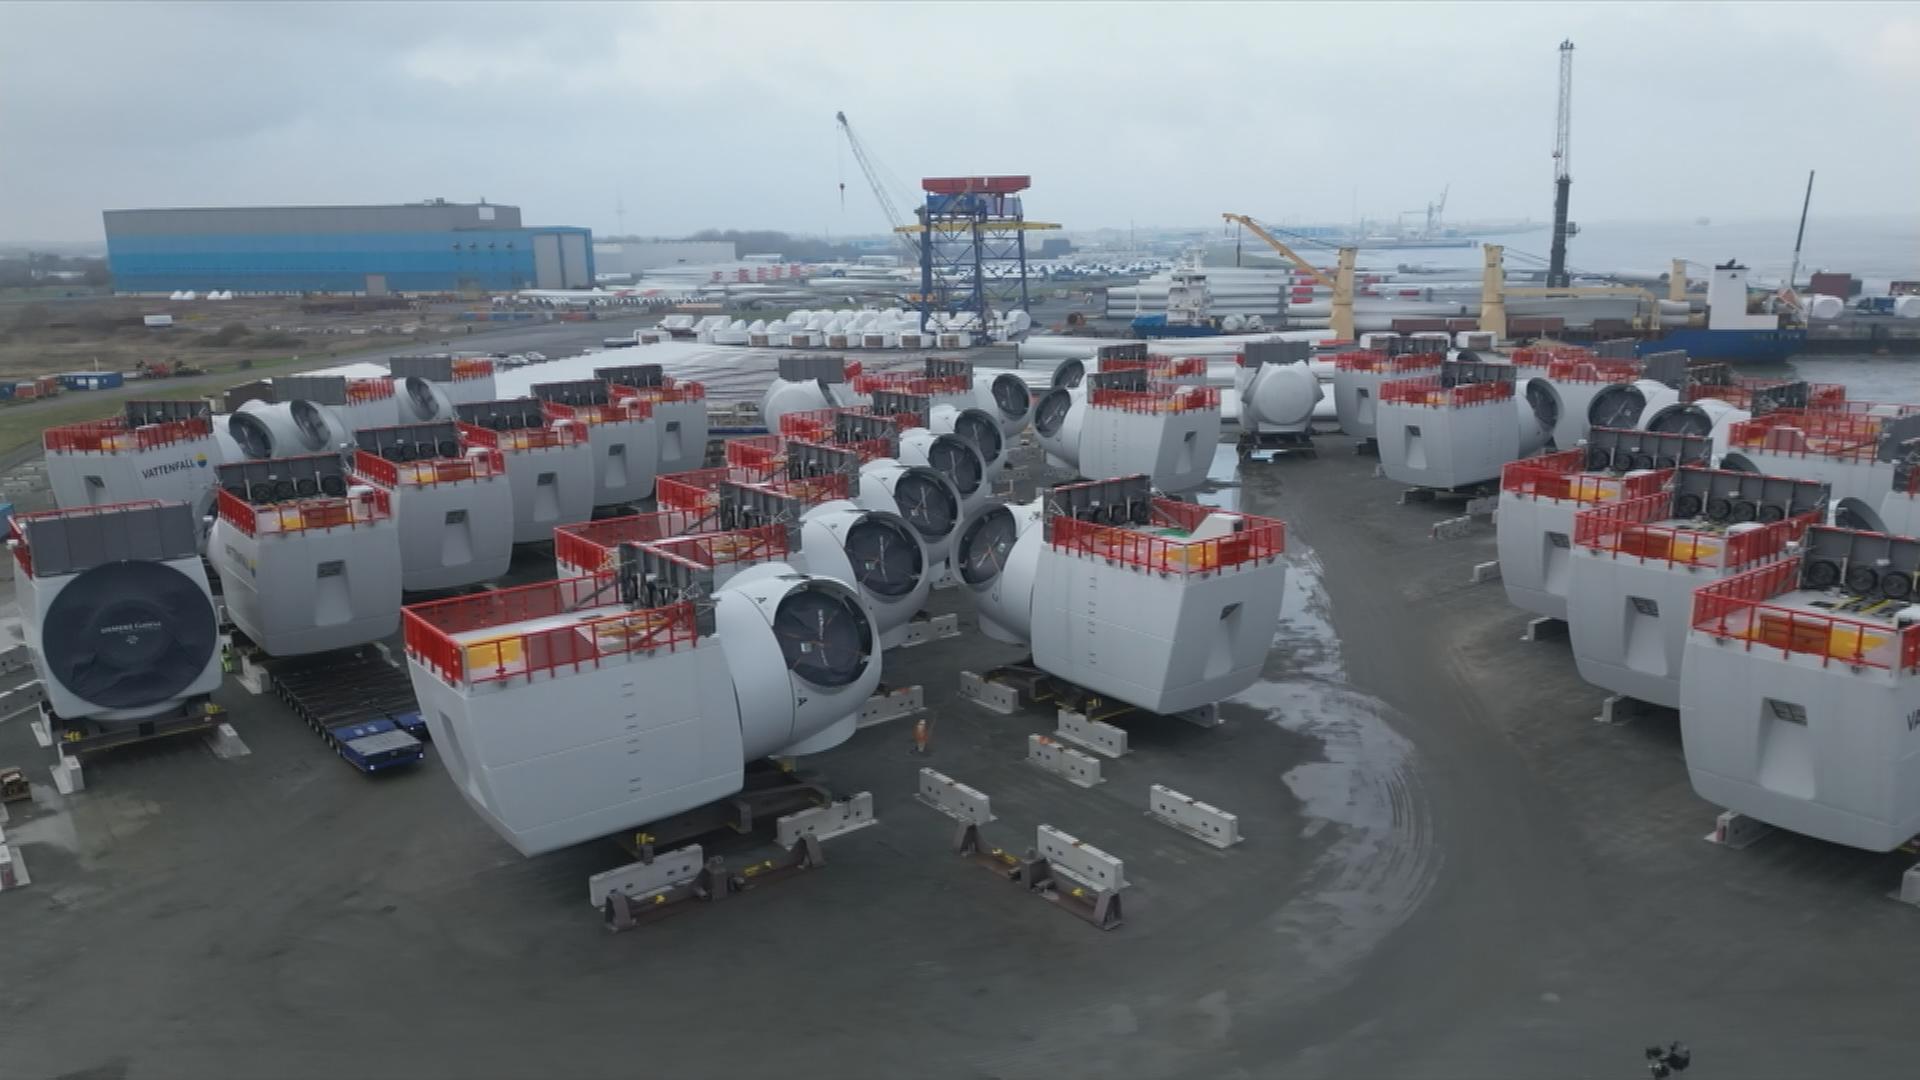 Hafen in Cuxhaven überfüllt mit Bauteilen für Offshore Windkraftanlagen.